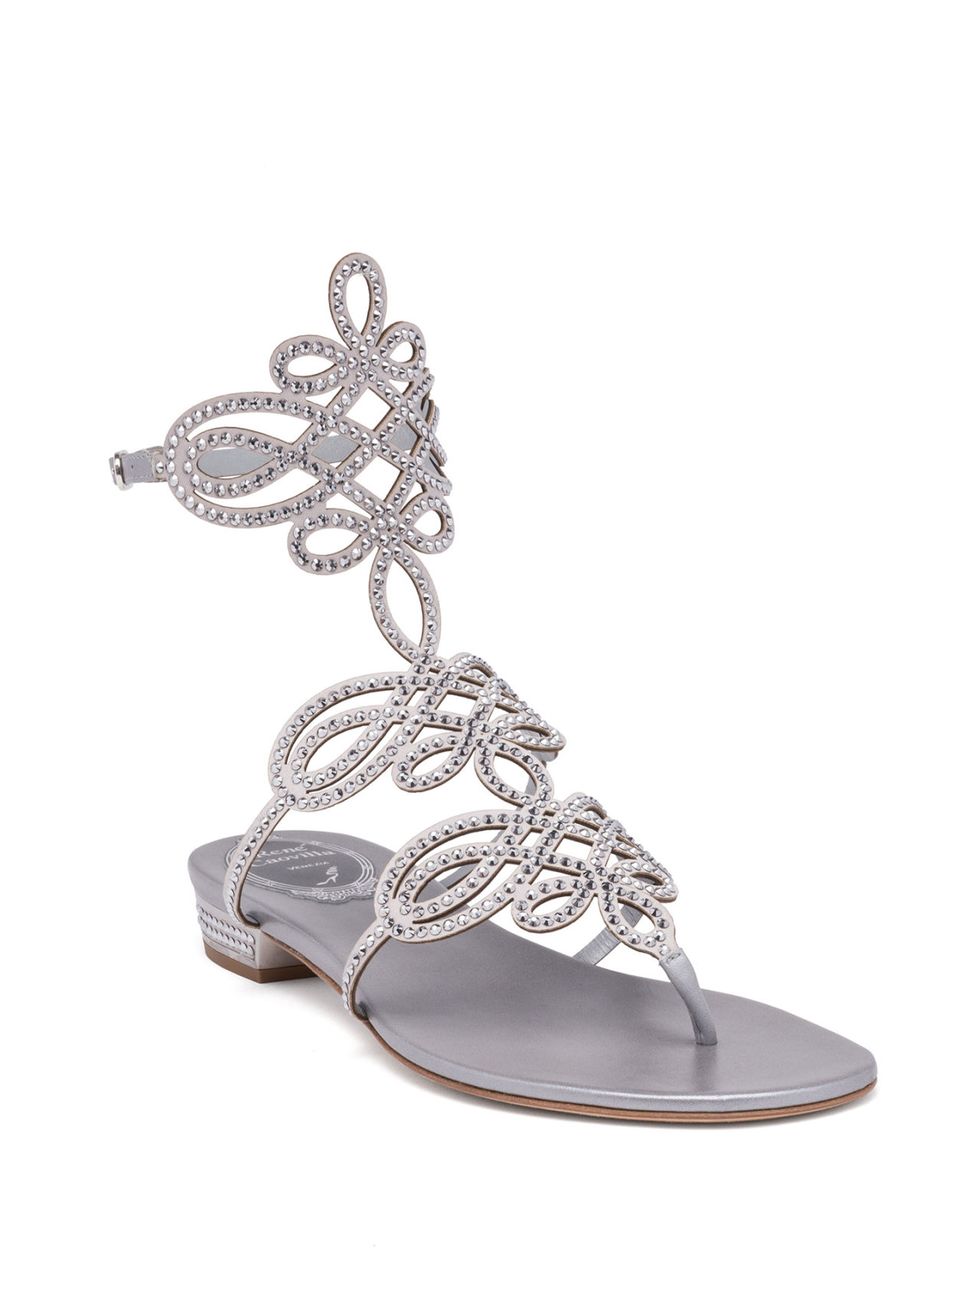 Ecco i sandali argento con tacco basso o tacco alto, infradito o con decorazioni preziose per illuminare di giorno e di sera i tuoi outfit estivi. 